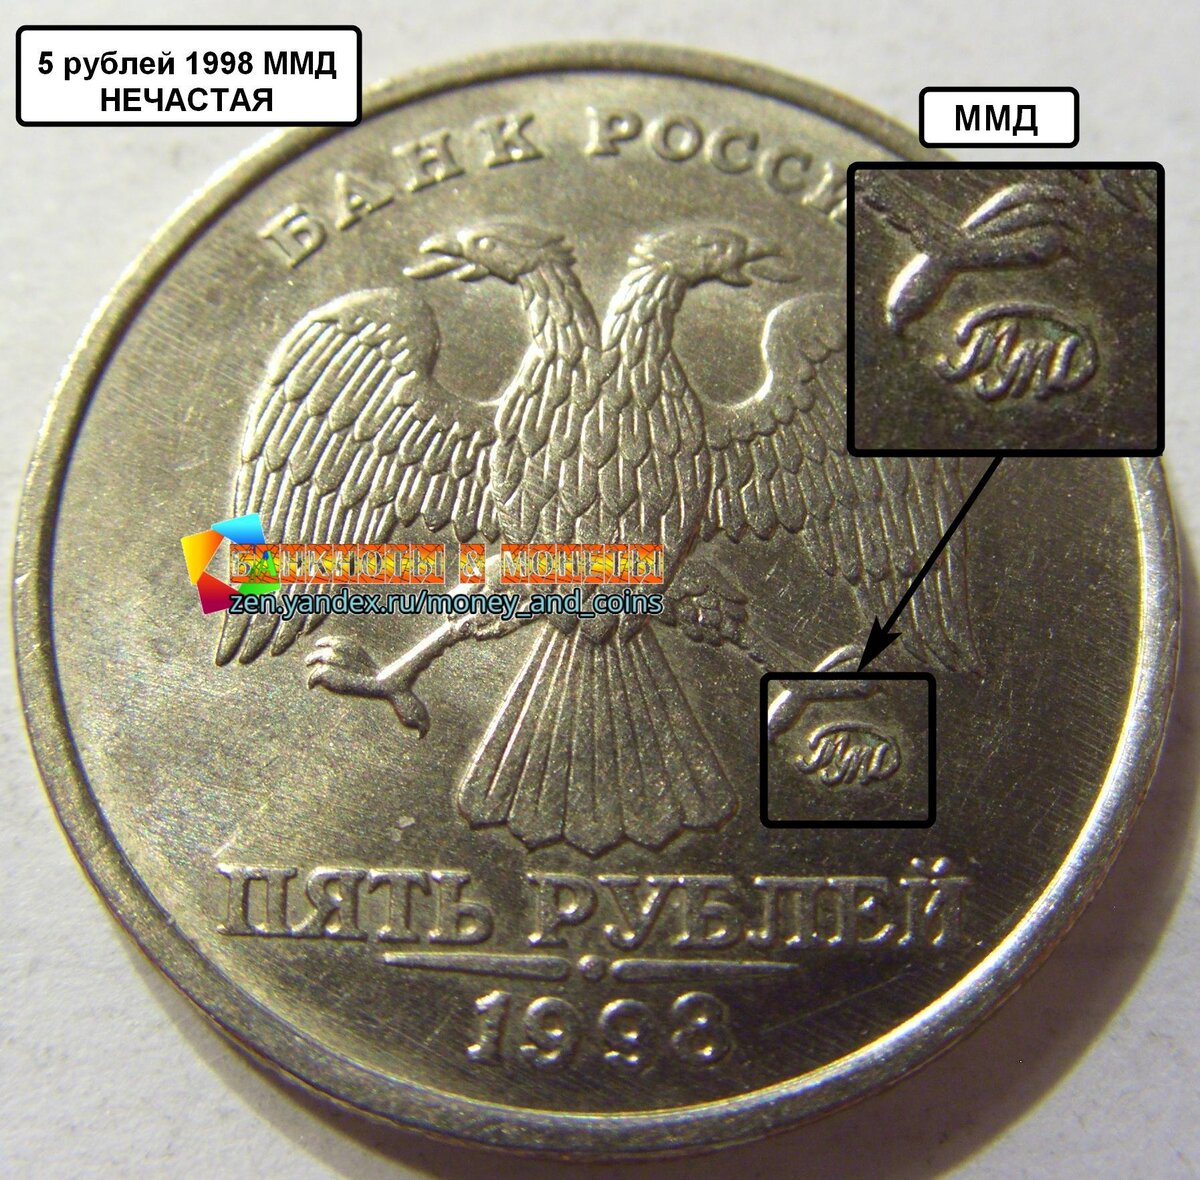 Фото монеты 5 рублей на весах